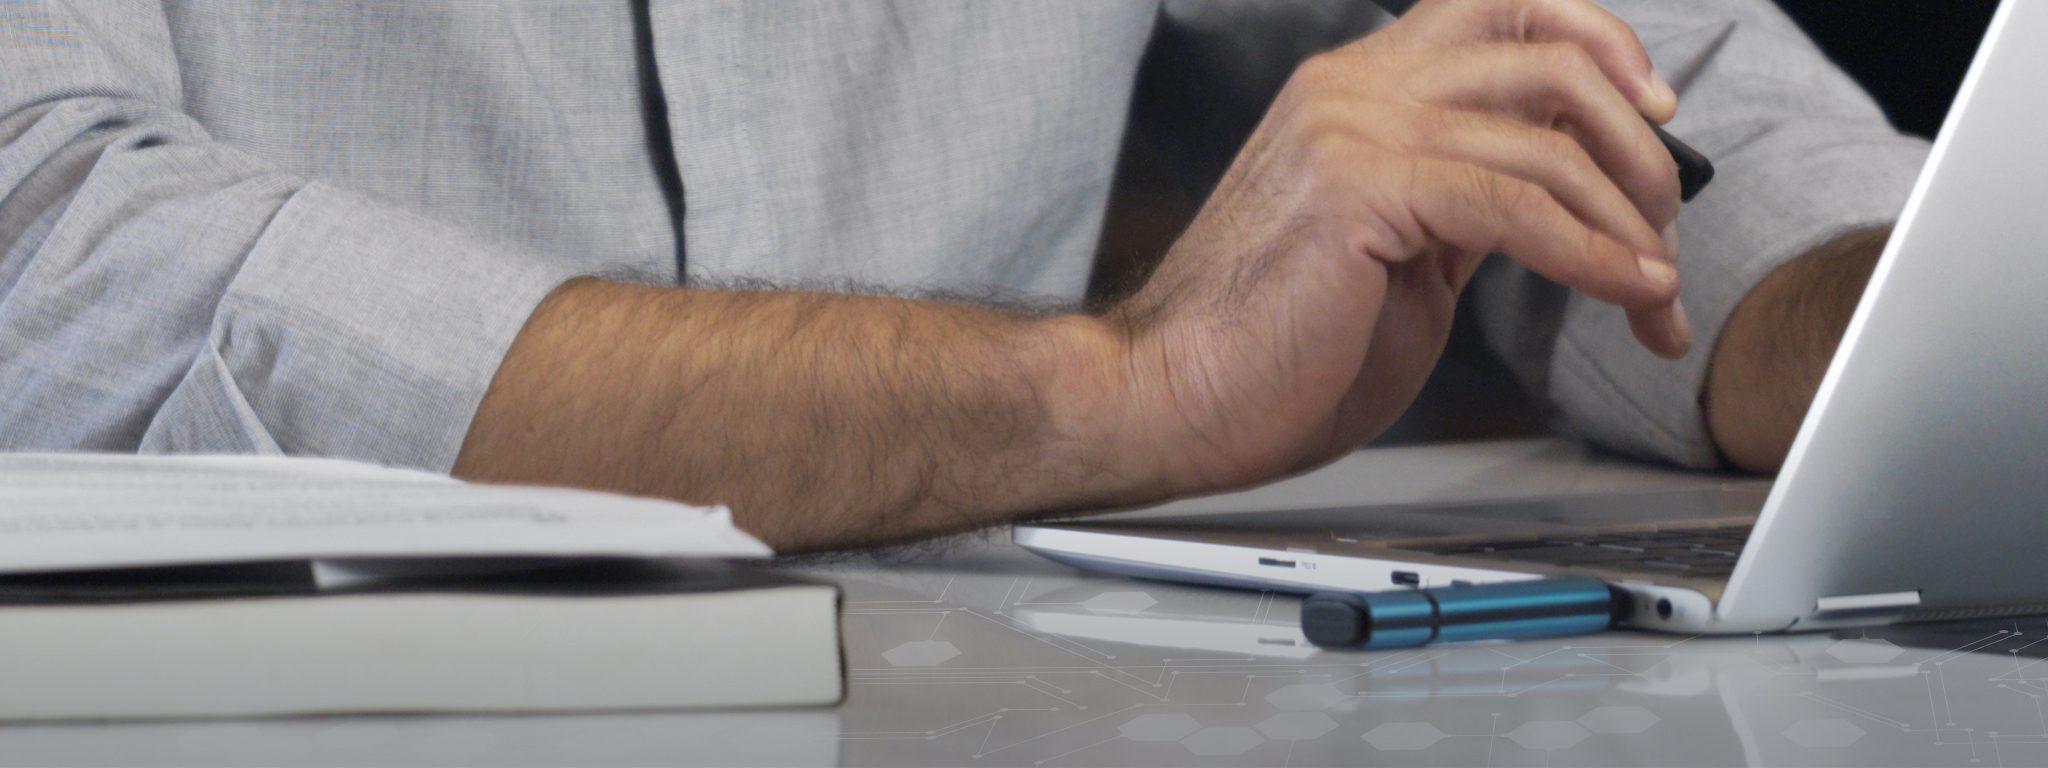 Kingston IronKey USB bellek takılı bir dizüstü bilgisayar ve klavyede yazan bir erkek elinin yakın görüntüsü